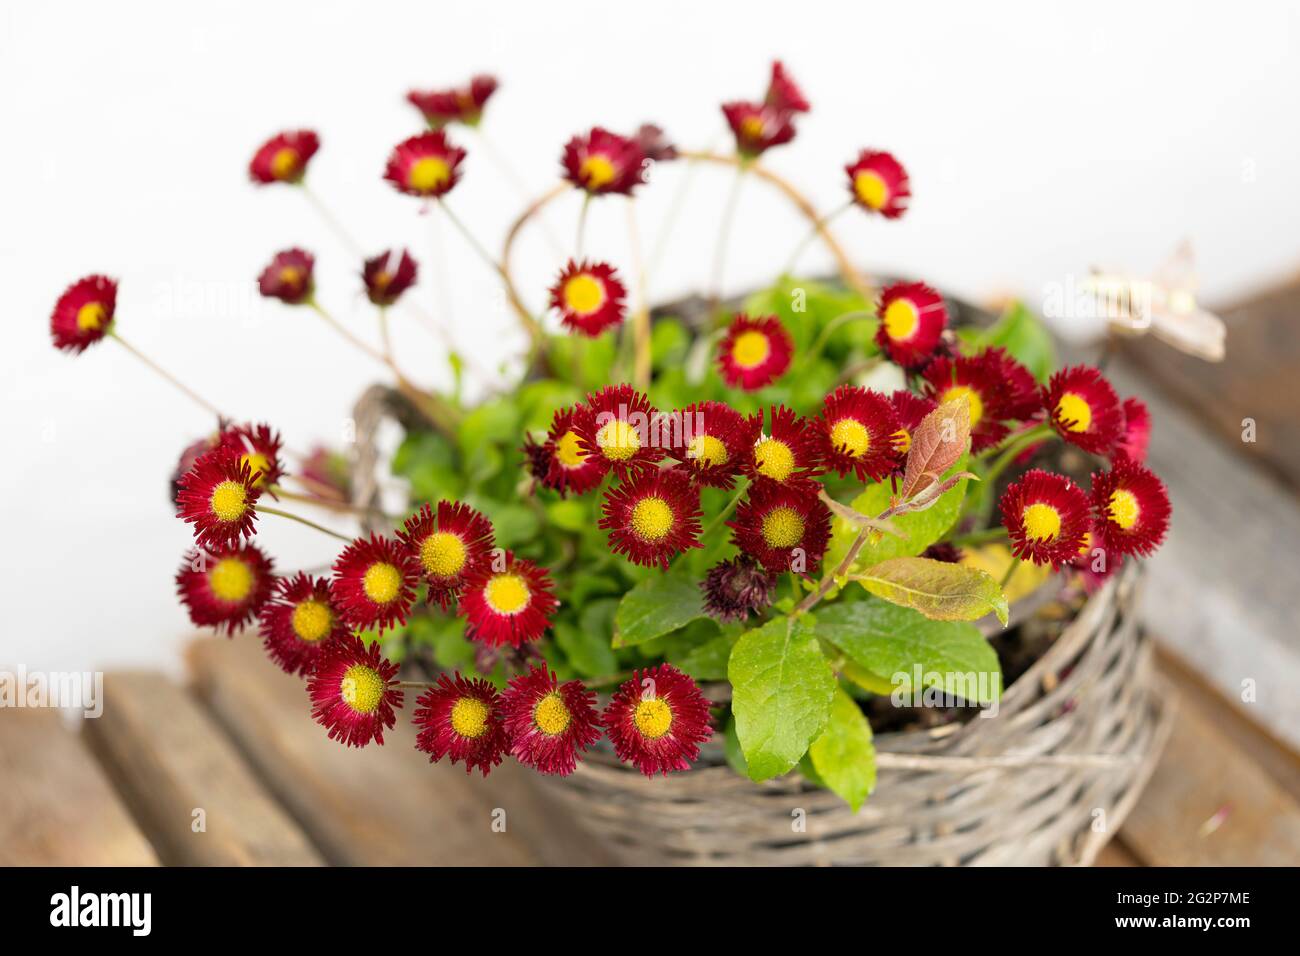 Roter Tasso Bellis (bellis perennis) mit pommerähnlichen Blüten, auch bekannt als englische Gänseblümchen, blüht in Österreich in einem Weidenkorb-Blumentopf Stockfoto